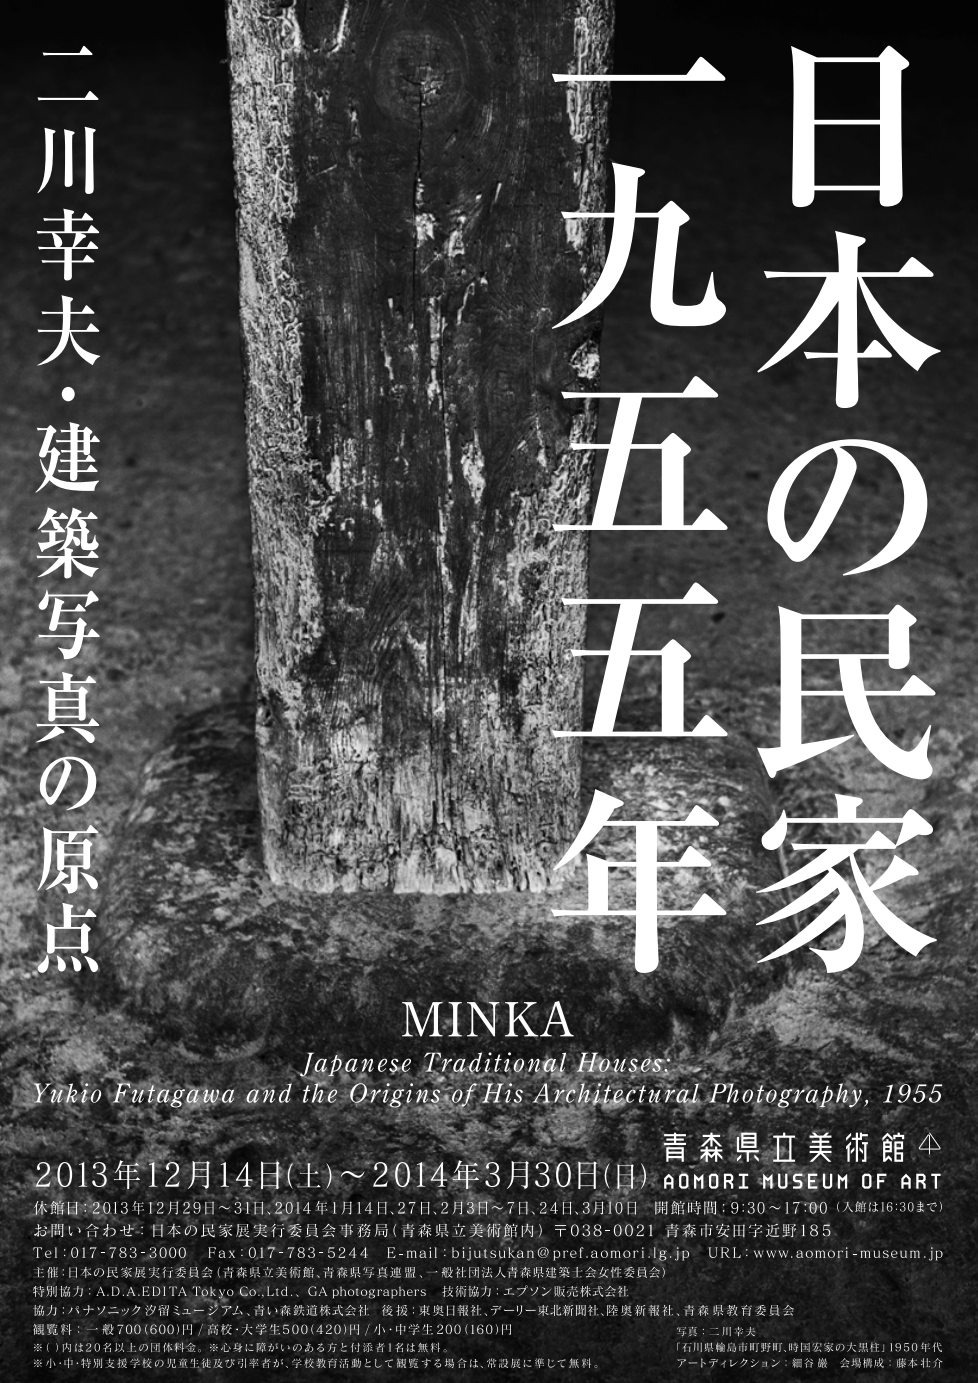 日本の民家 一九五五年 二川幸夫・建築写真の原点 MINKA Japanese 